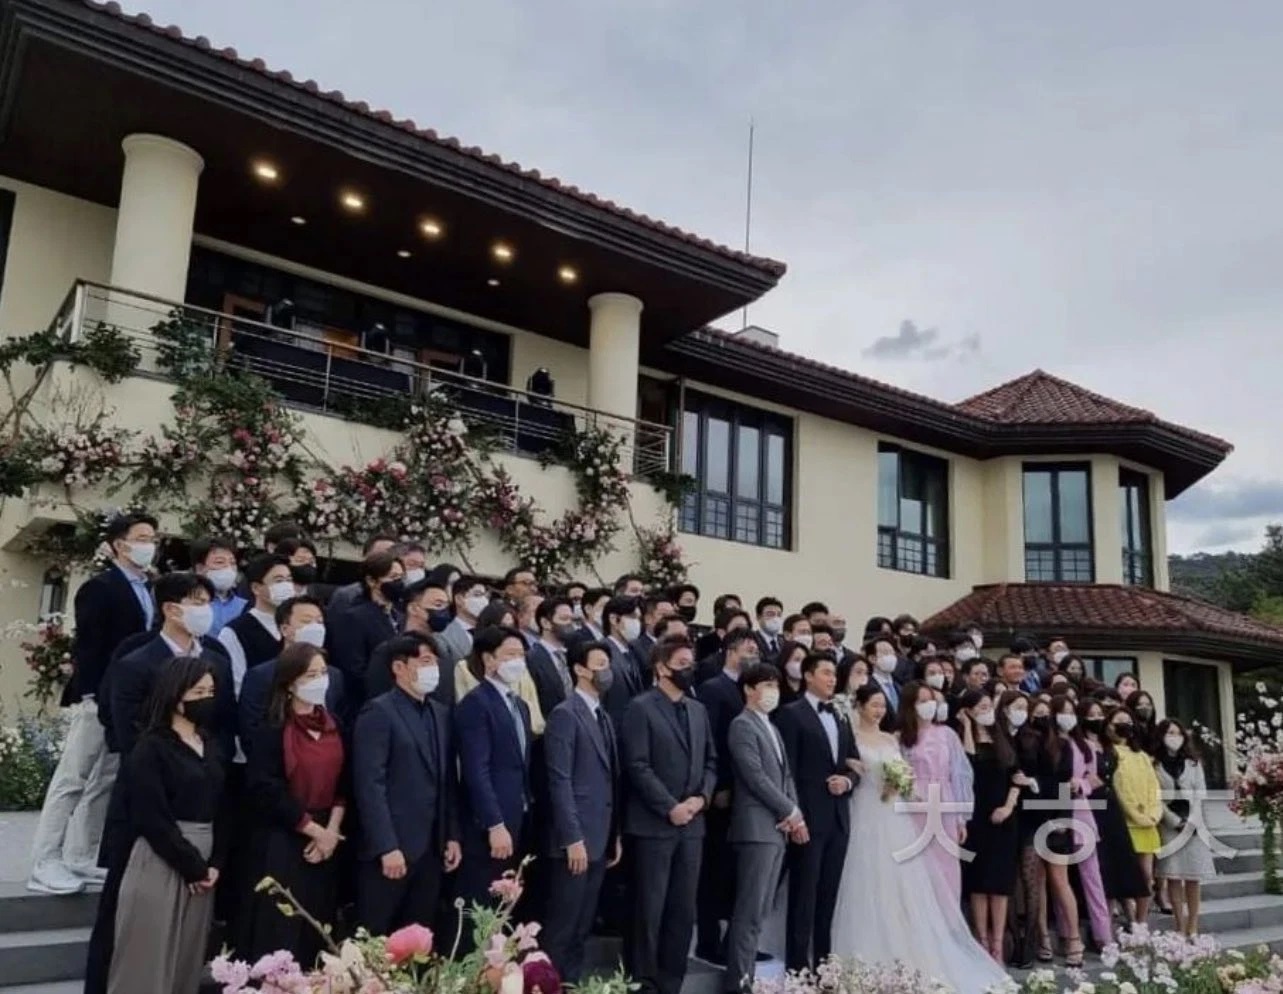 Nhìn lại đám cưới Hyun Bin - Son Ye Jin sau tròn 1 tháng: Trở thành cặp vợ chồng thế kỷ được cả thế giới săn đón, nhưng người trong cuộc liệu có thoải mái? - Ảnh 5.